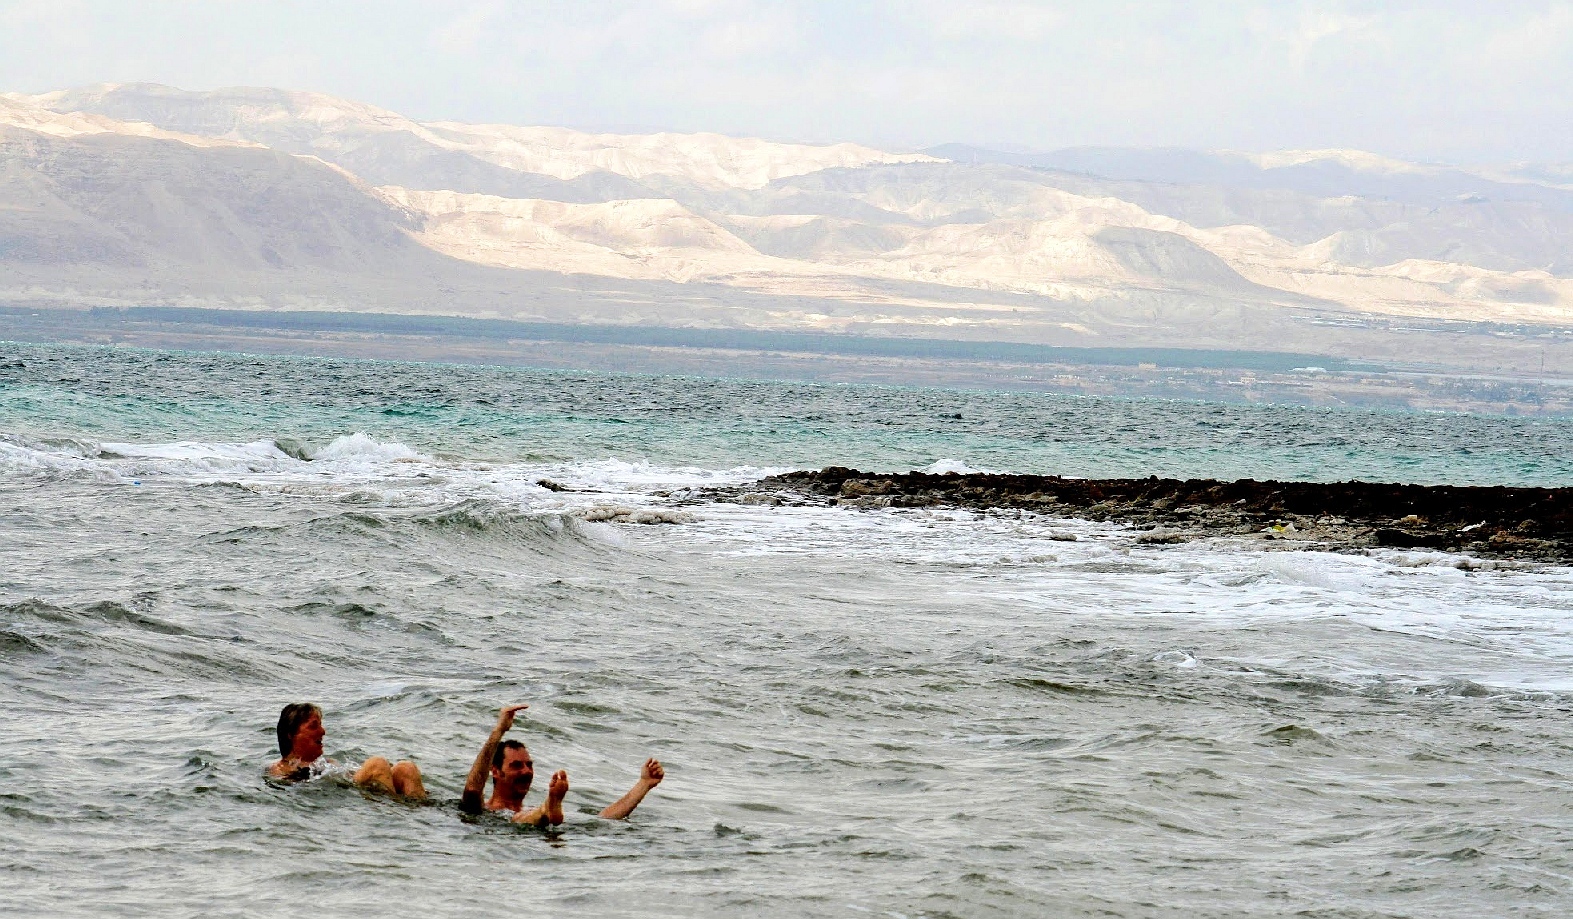 La mer Morte en Jordanie est un lac salé du Proche-Orient partagé entre Israël, la Jordanie et la Palestine.D’une surface approximative de 810 km2, il est alimenté par le Jourdain